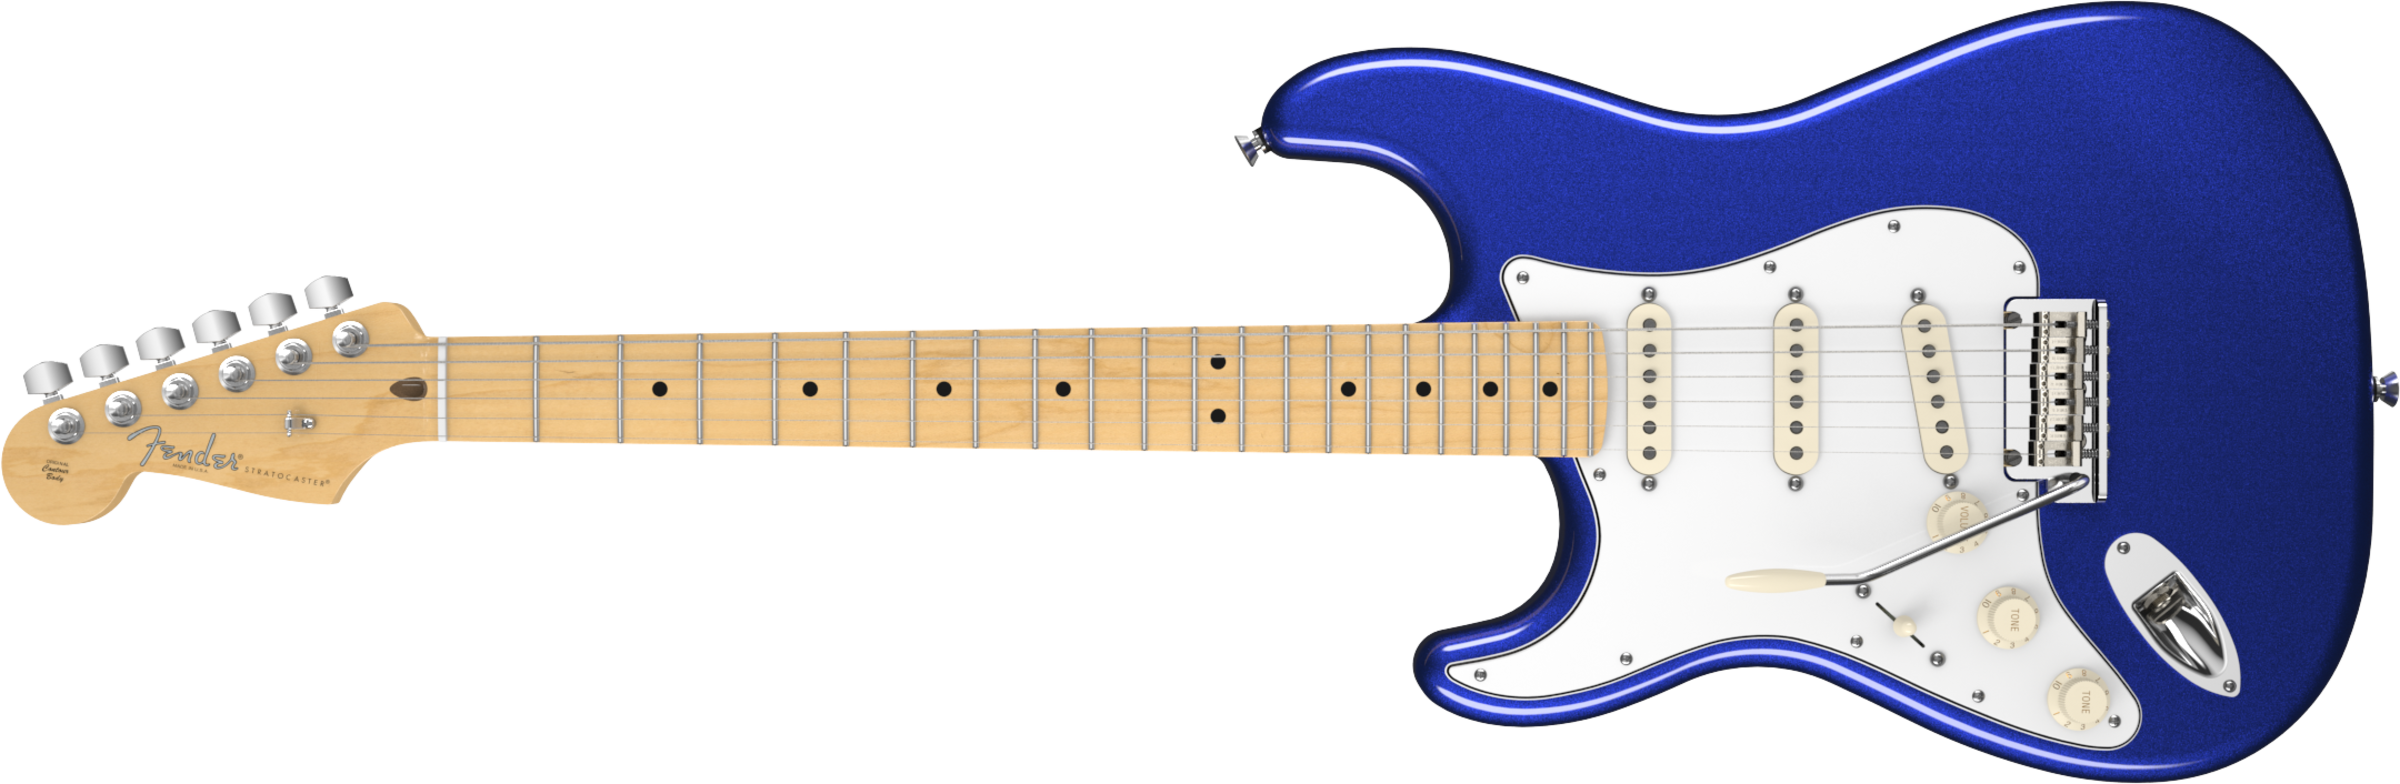 Fender American Standard Stratocaster Left-handed, (2400x784), Png Download